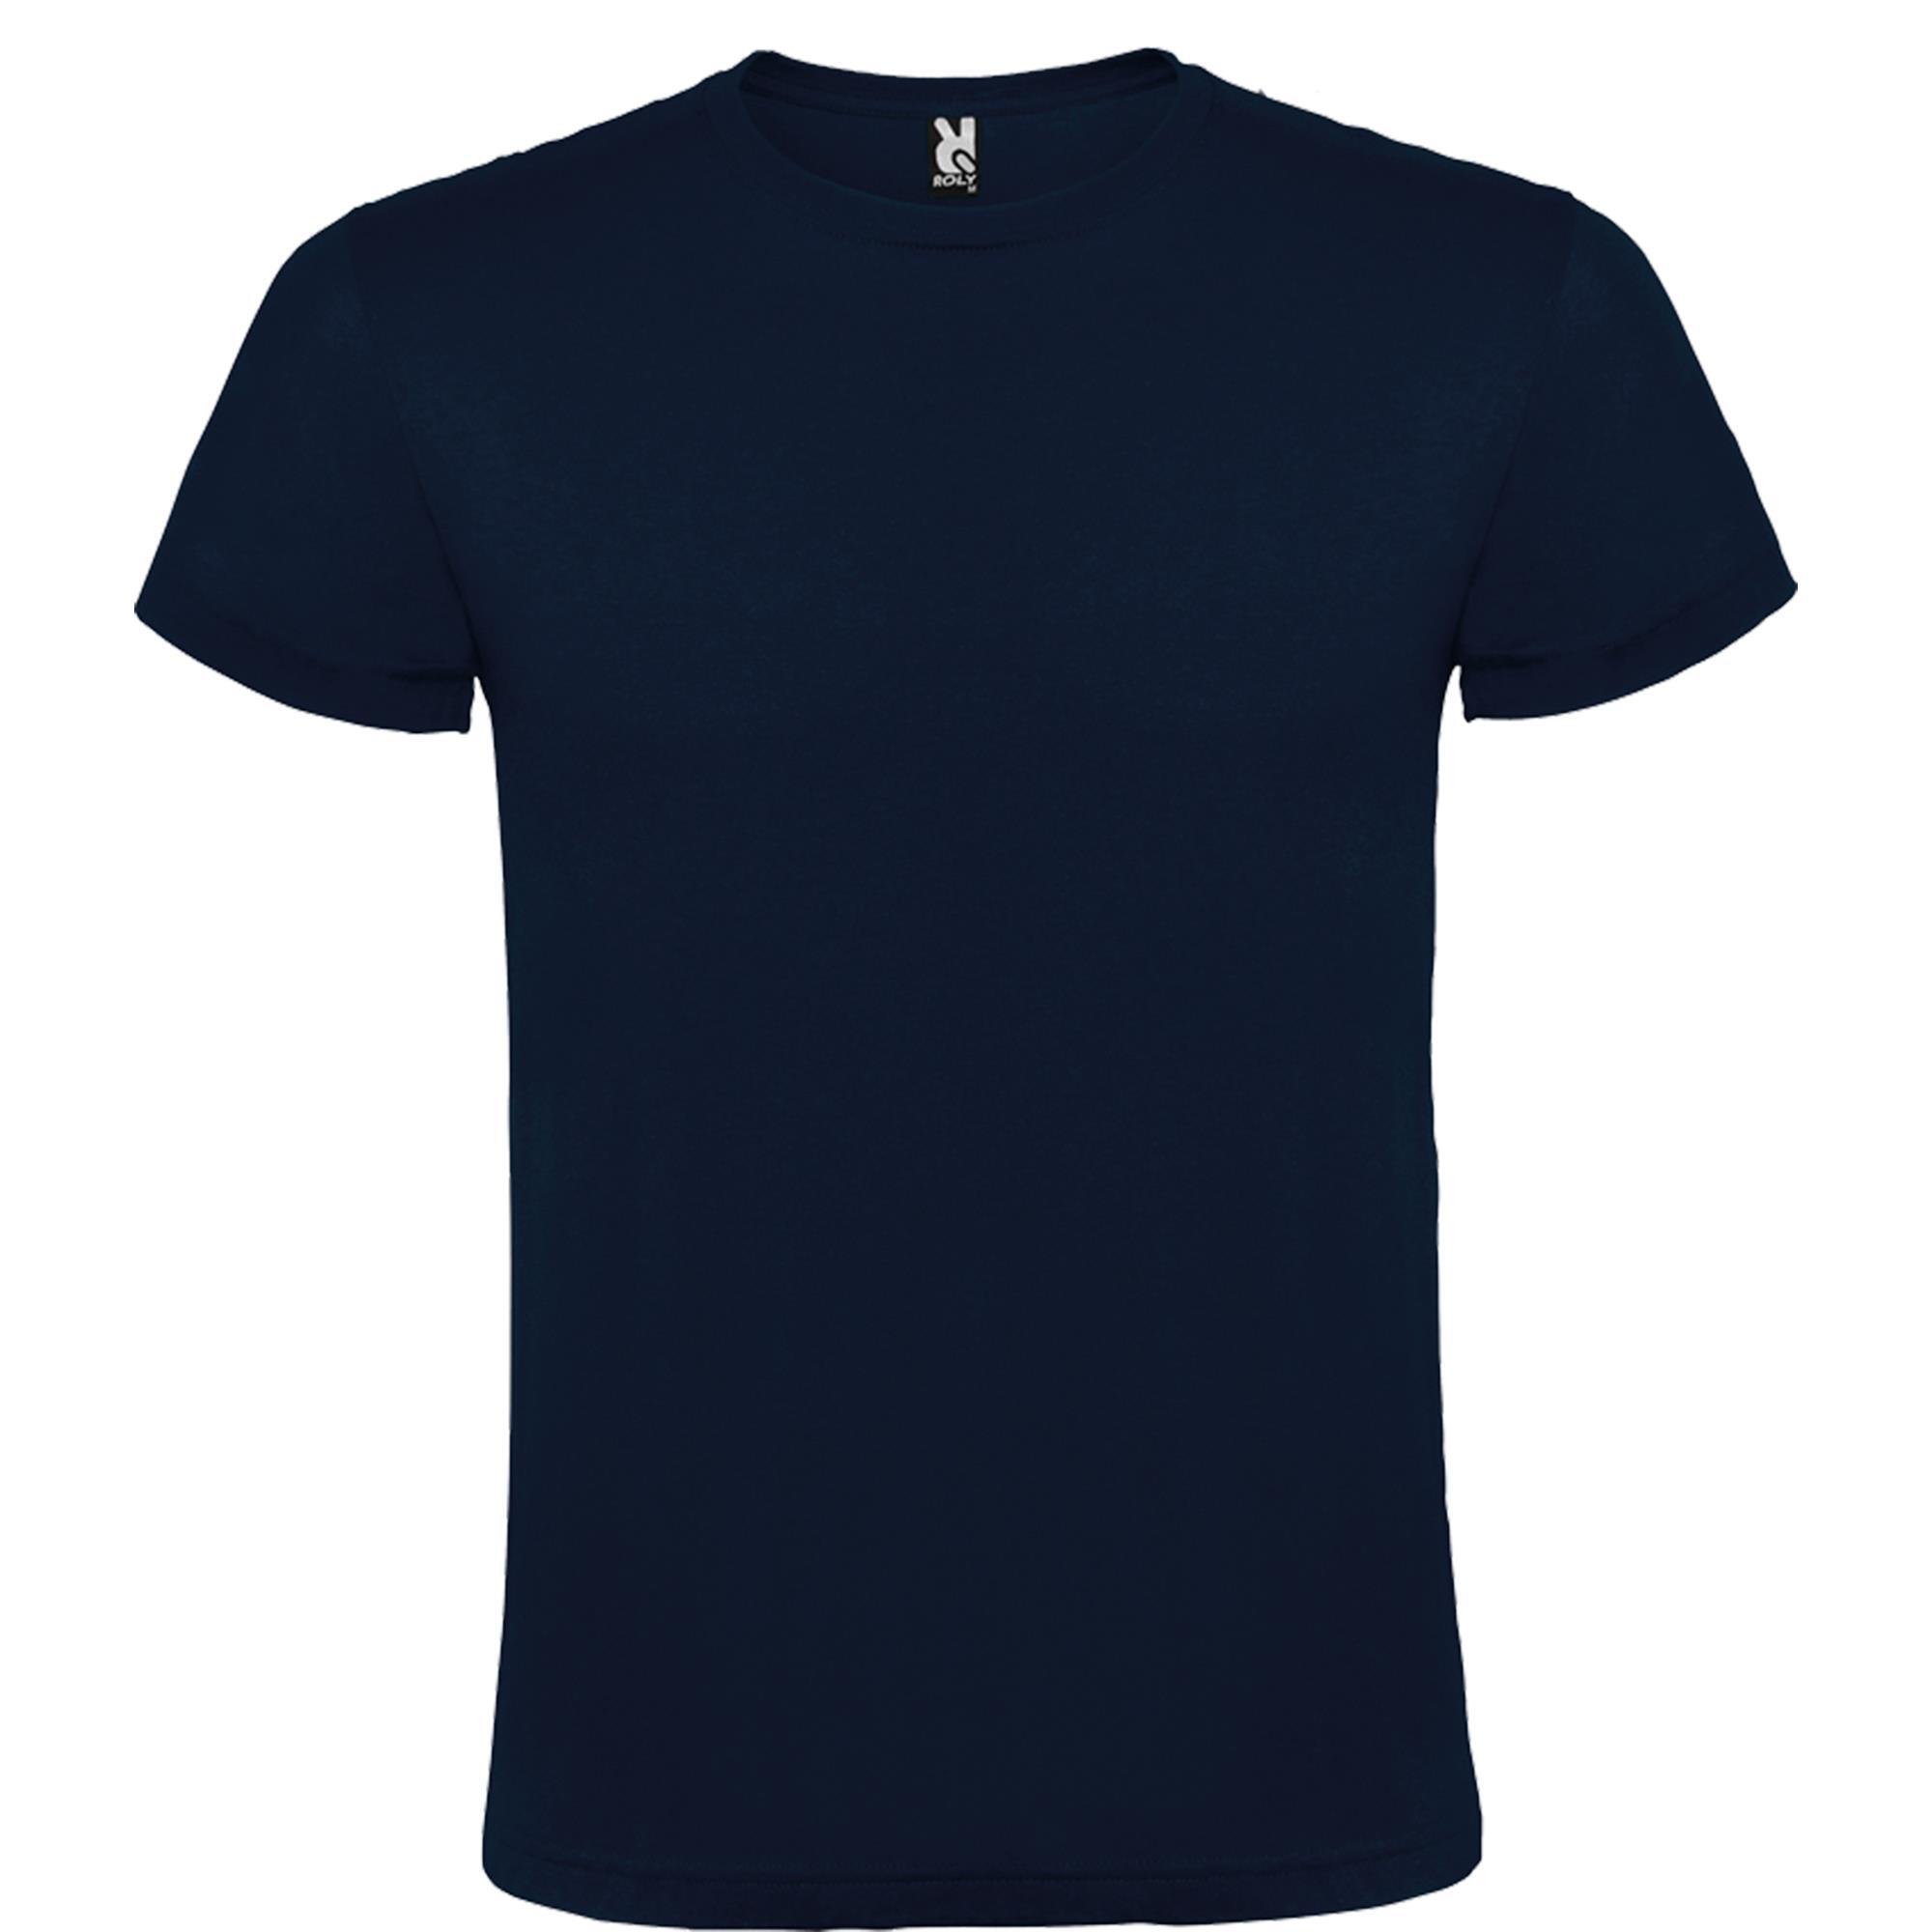 Rondgebreide T-shirt unisex voor volwassen Marine blauw personalisatie mogelijk